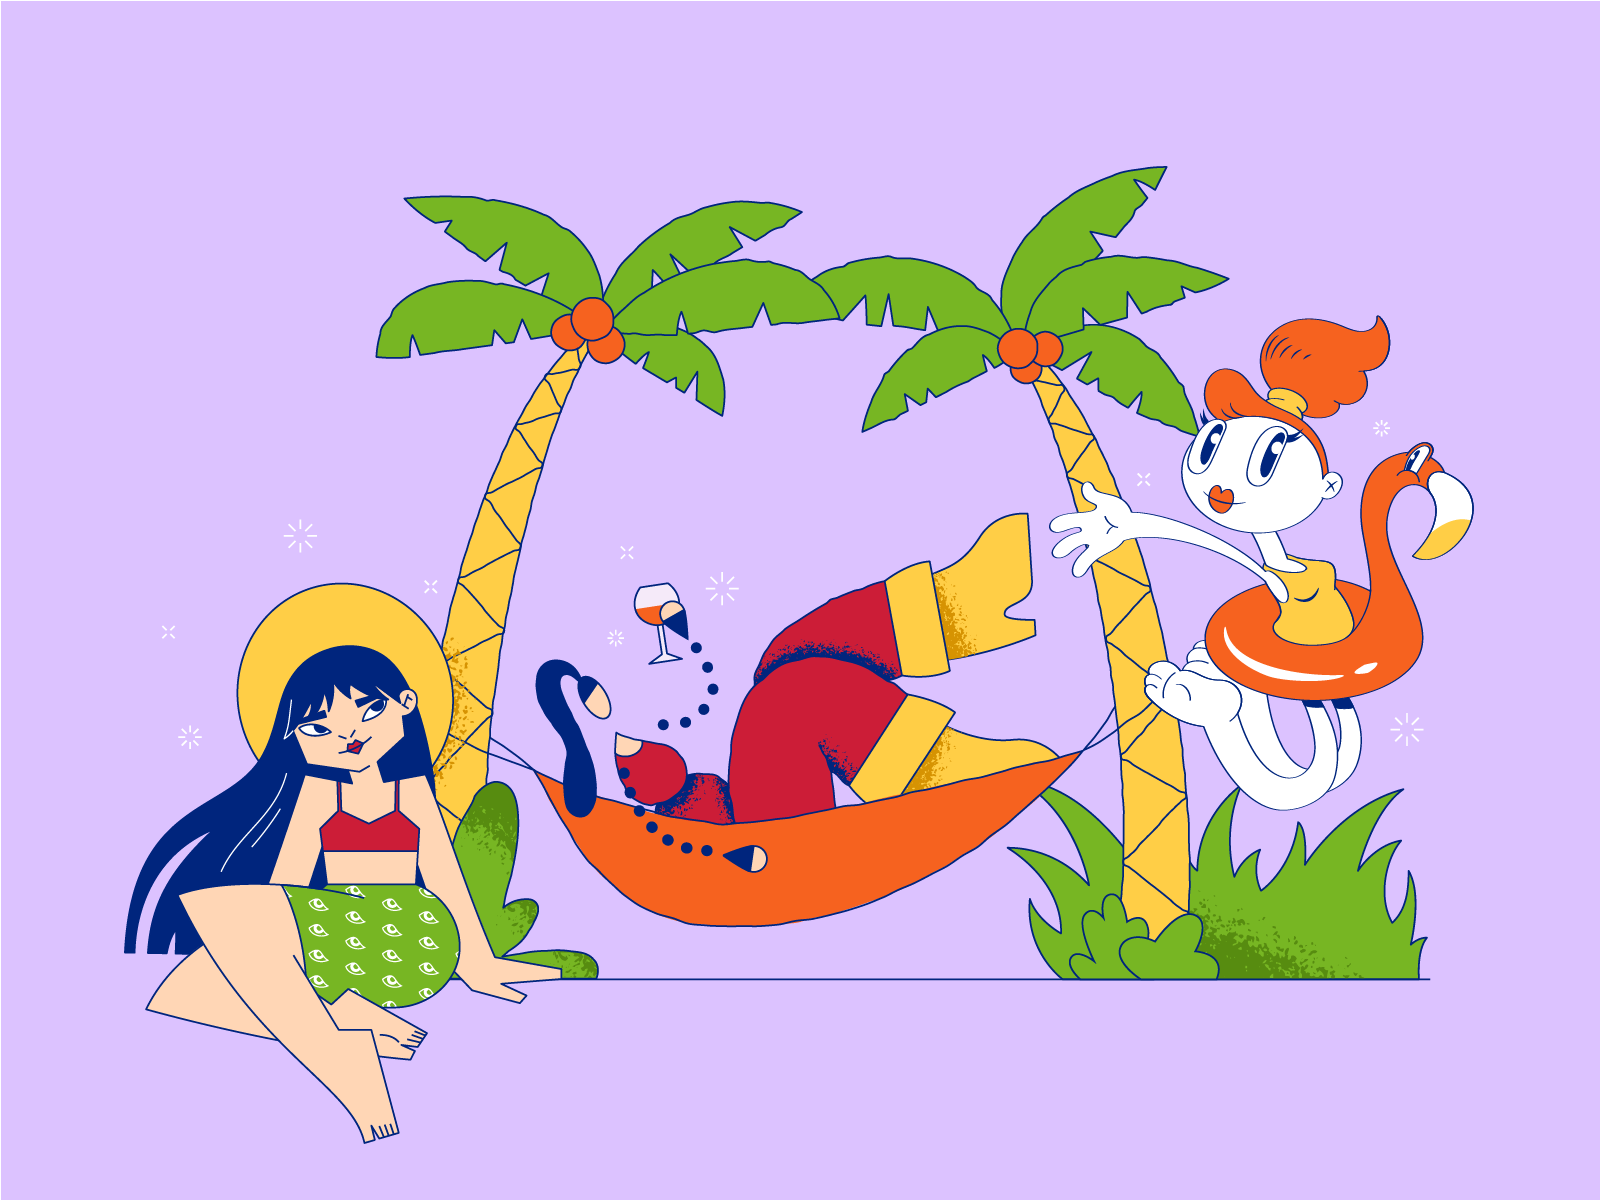 End of summer summer vacation icons8 vector art illustration digital art